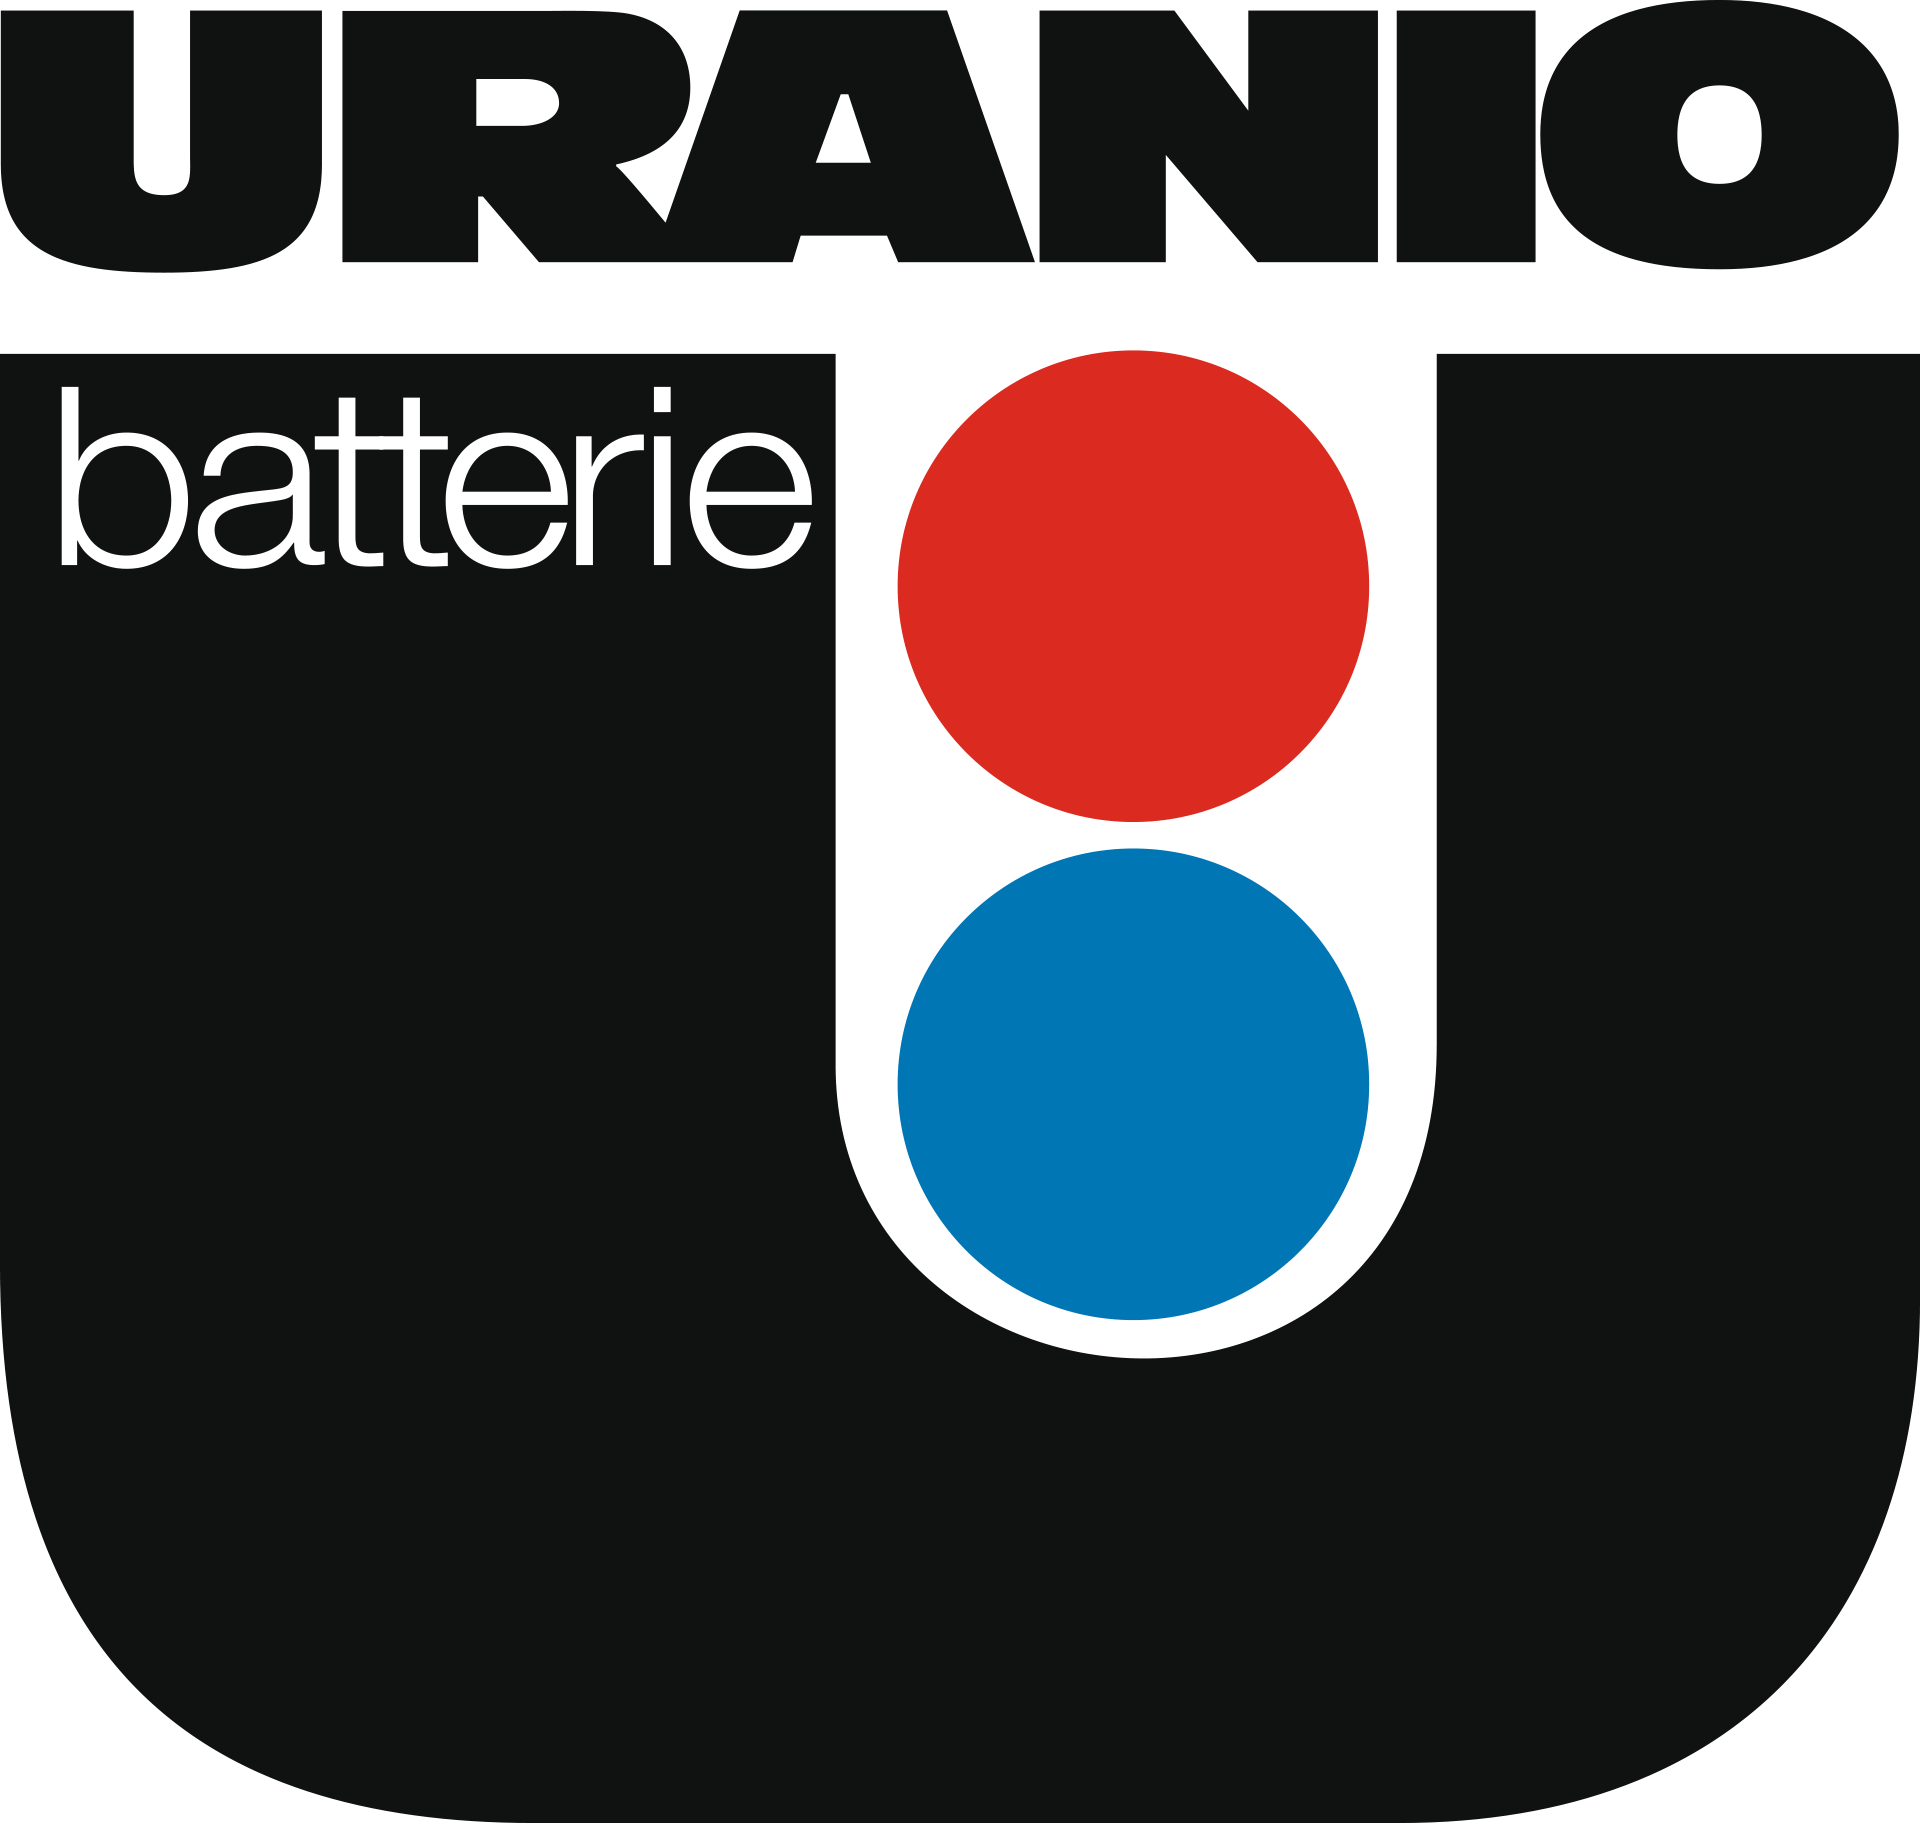 Uranio Batterie